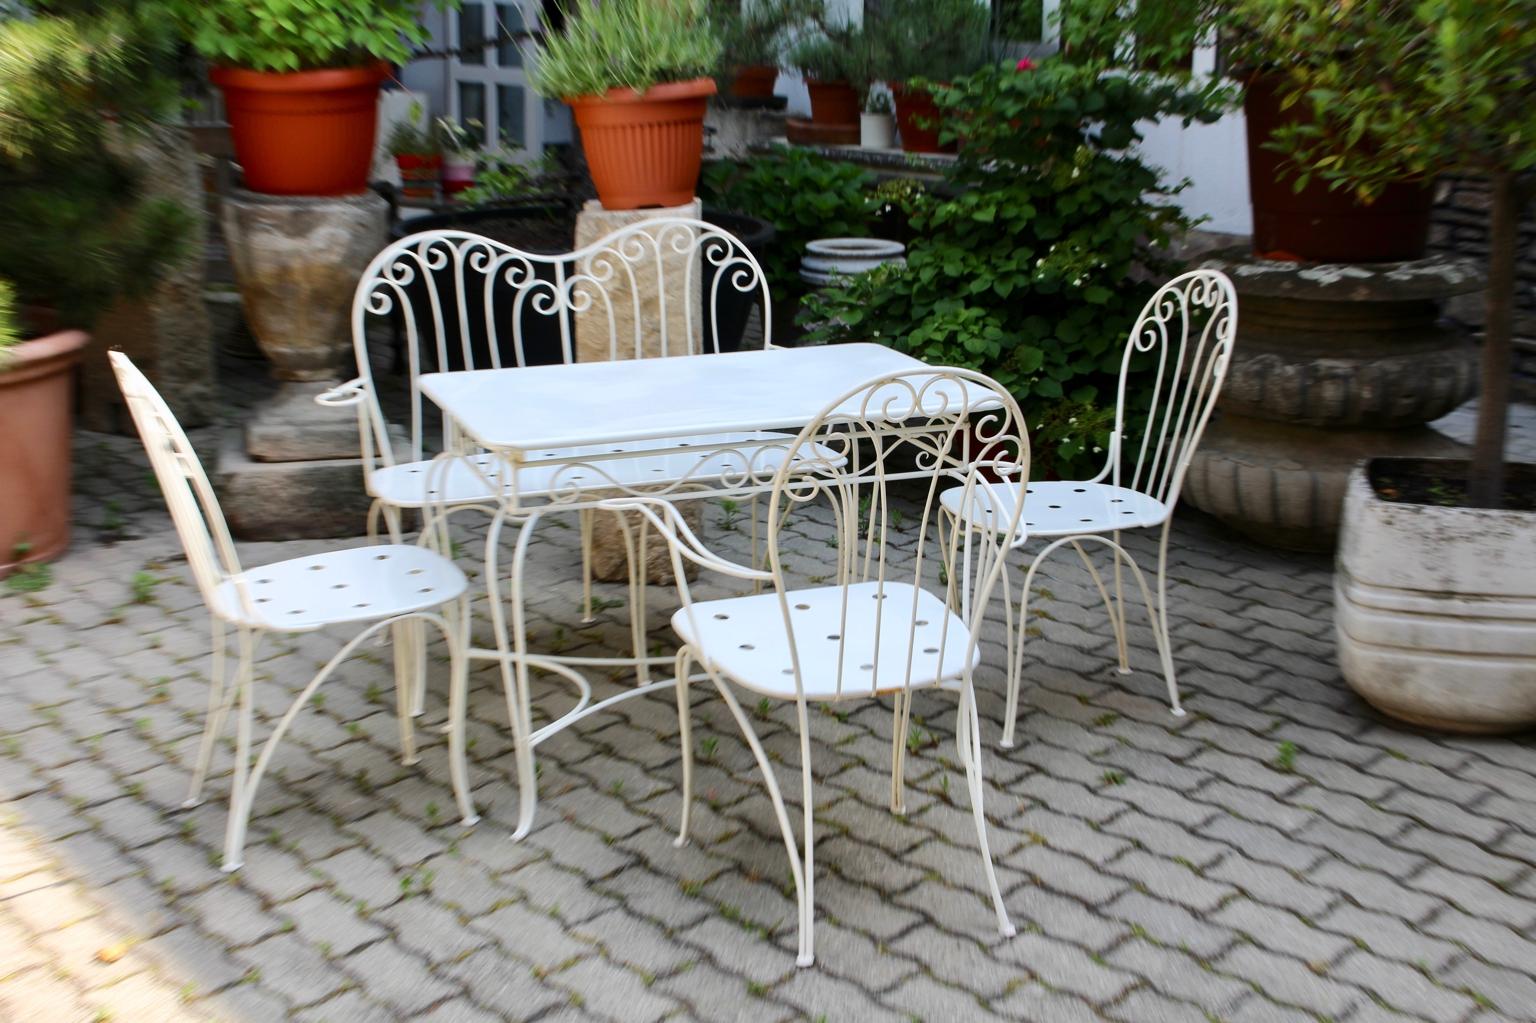 Mid Century Modern weiße Metall Vintage Sitzgruppe oder Gartenmöbel, die entworfen und ausgeführt wurden von Stanislaus Karasek und Co, 1950er Jahre, Wien, Österreich.
Die Sitzgruppe ist für den Innen- und Außenbereich geeignet.
Dieses charmante